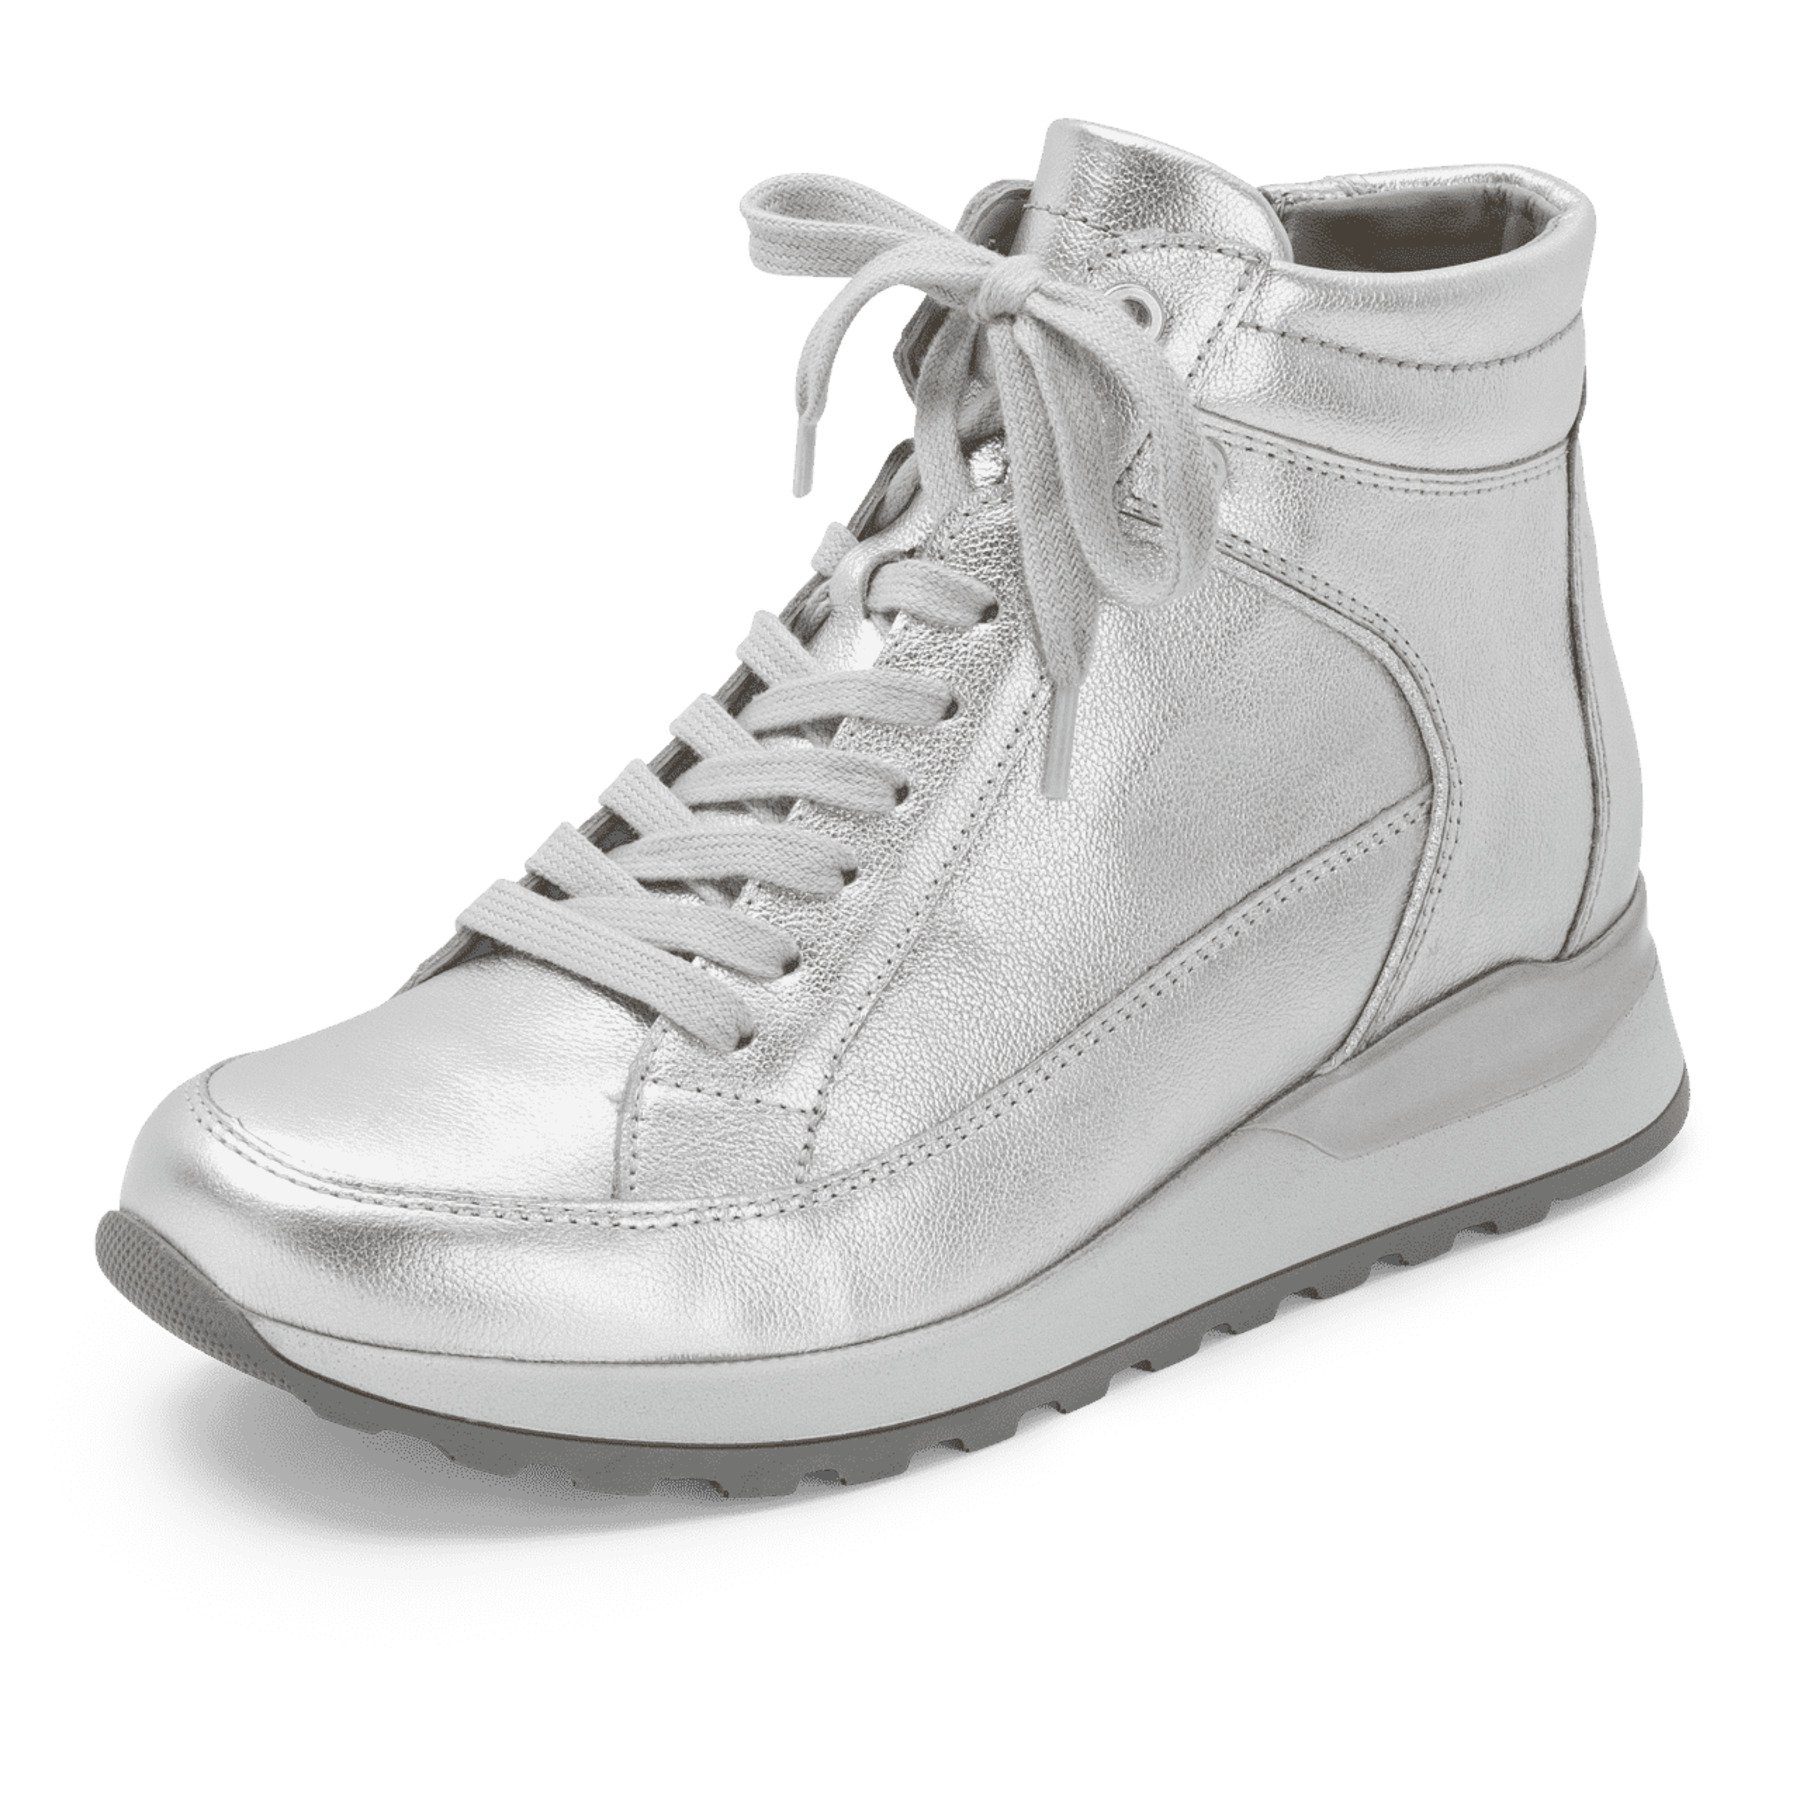 Silberne Damen Plateau Sneaker online kaufen | OTTO